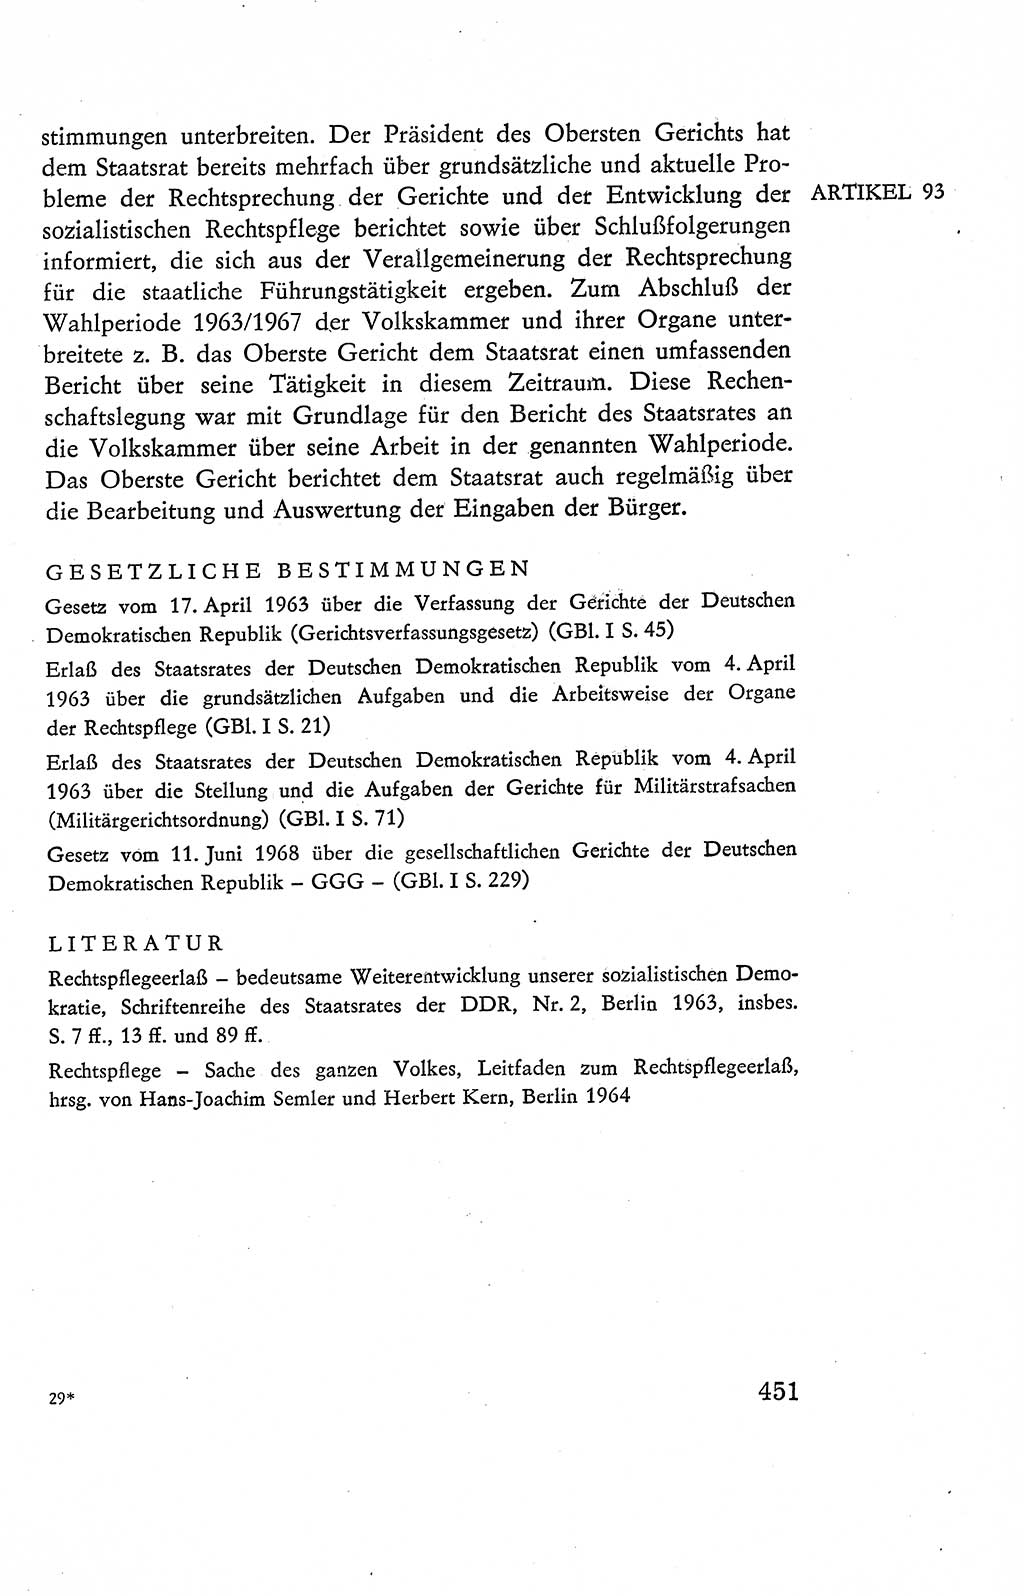 Verfassung der Deutschen Demokratischen Republik (DDR), Dokumente, Kommentar 1969, Band 2, Seite 451 (Verf. DDR Dok. Komm. 1969, Bd. 2, S. 451)